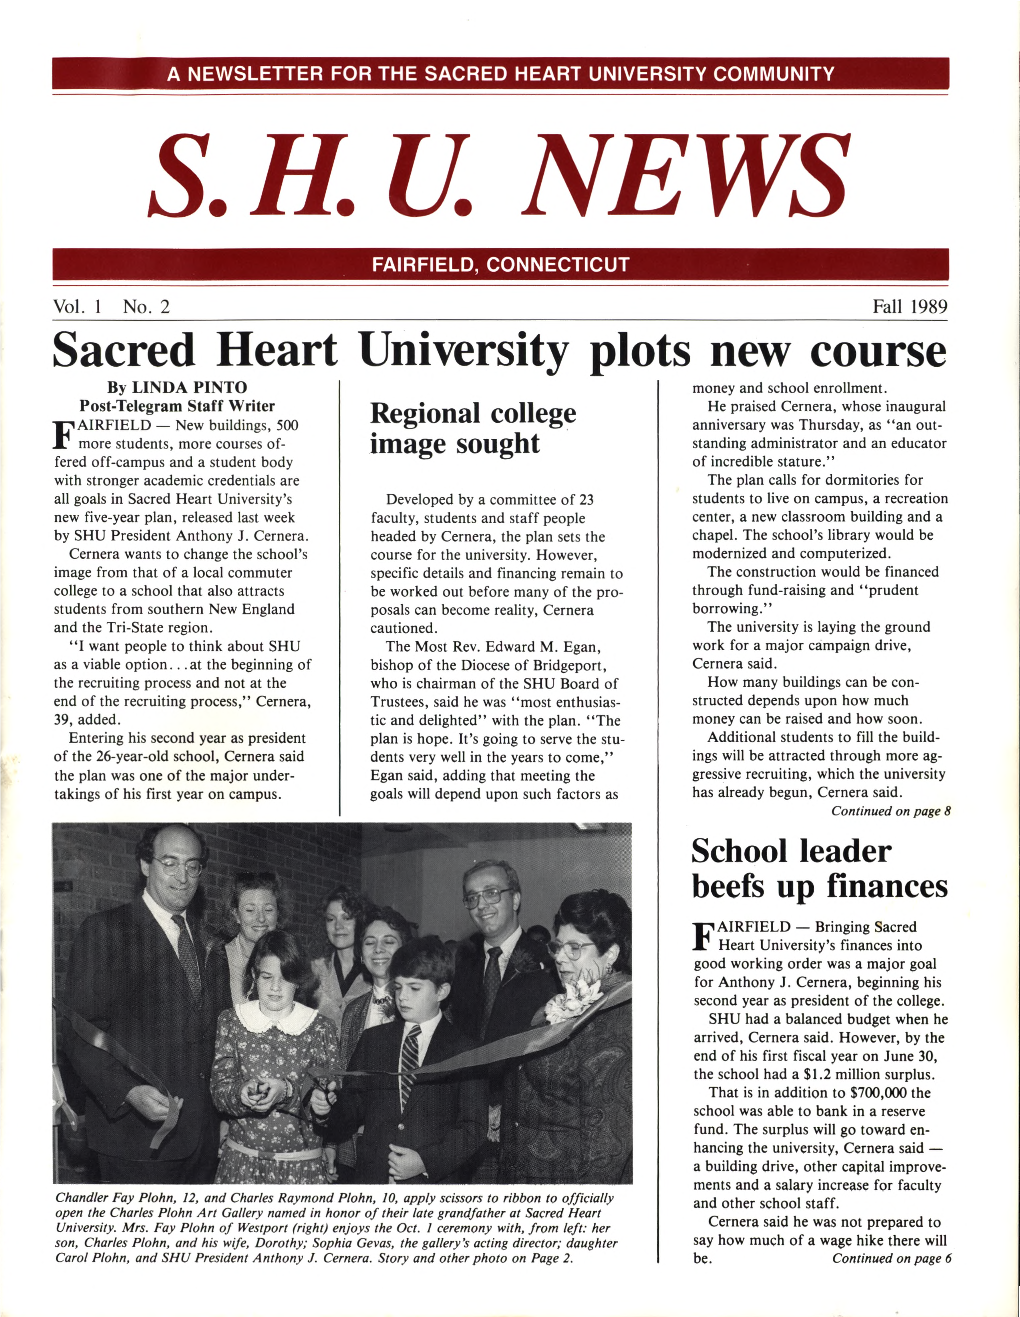 S.H.U. News, Vol. 1, No. 2